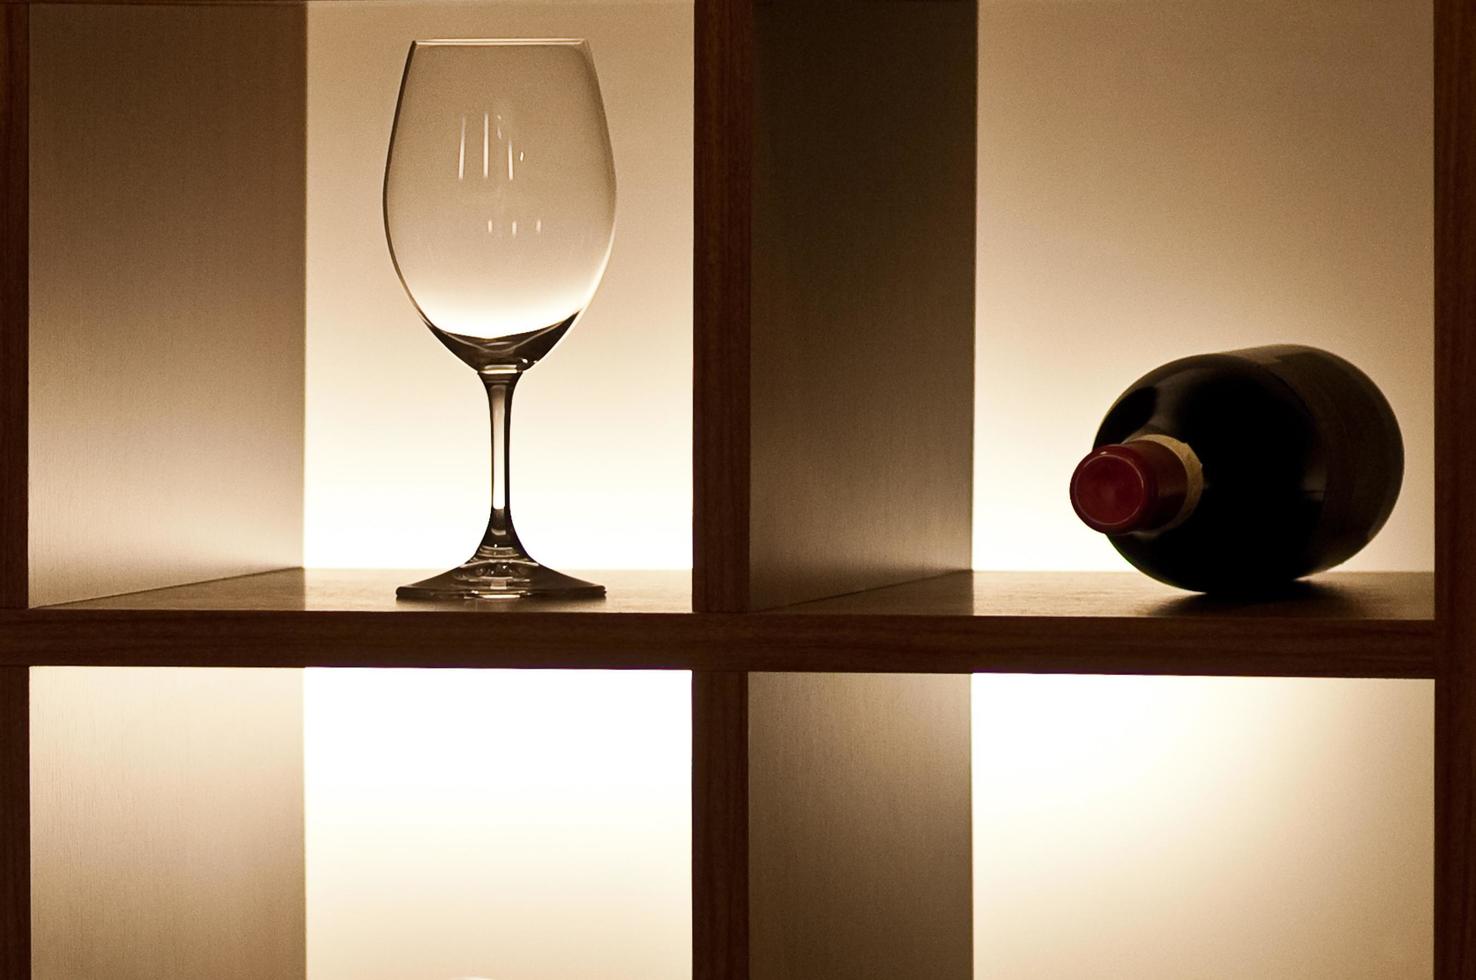 una sola copa de vino vacía con hermosos reflejos y una botella cerrada de vino tinto en un estante con iluminación lateral en el interior foto